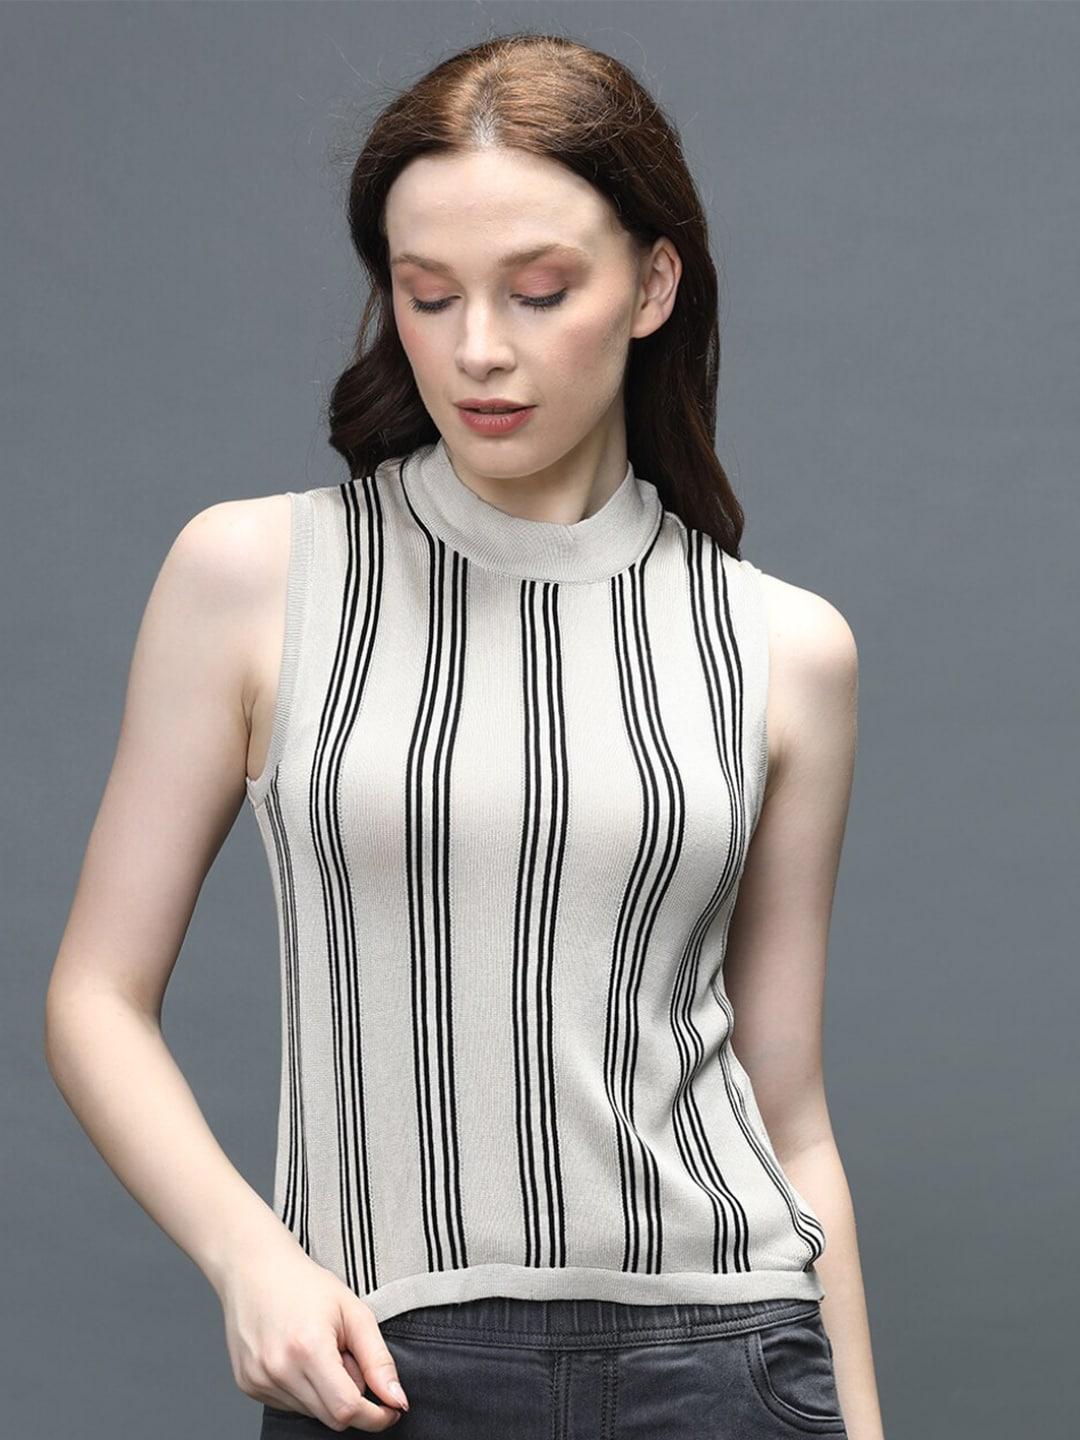 identiti women beige & black vertical striped top